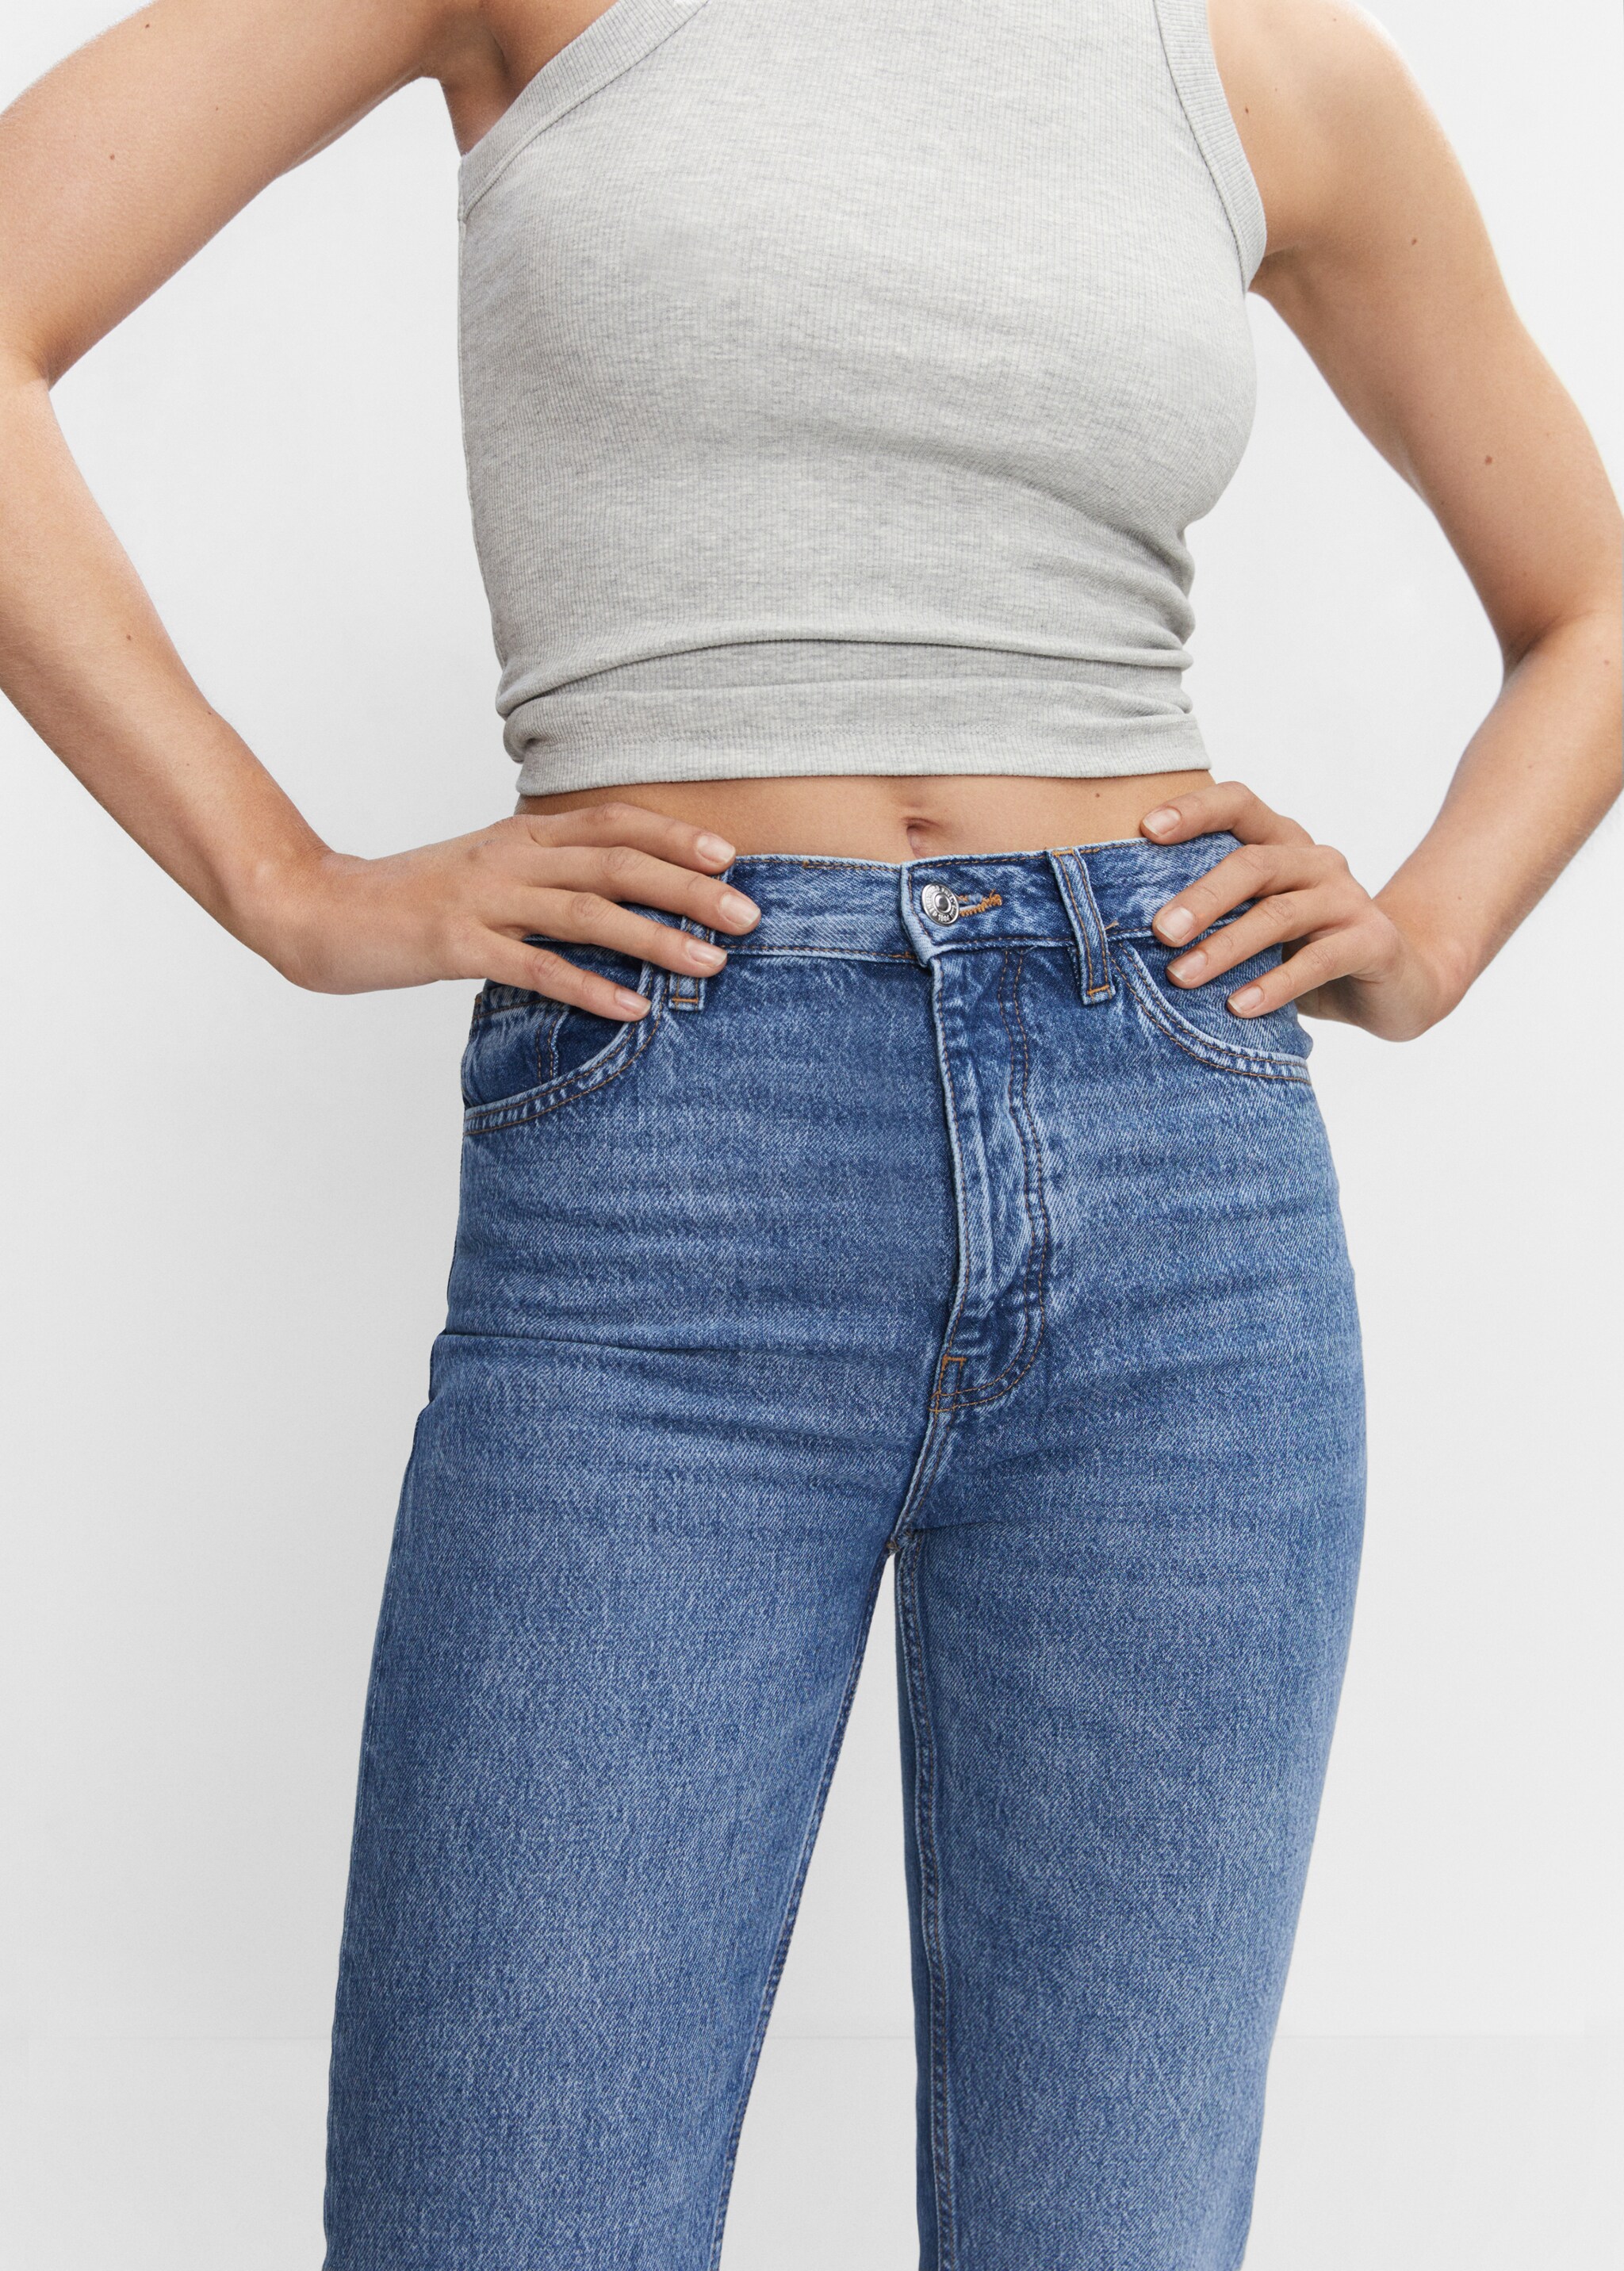 Jeans rectos tiro alto aberturas - Detalle del artículo 6